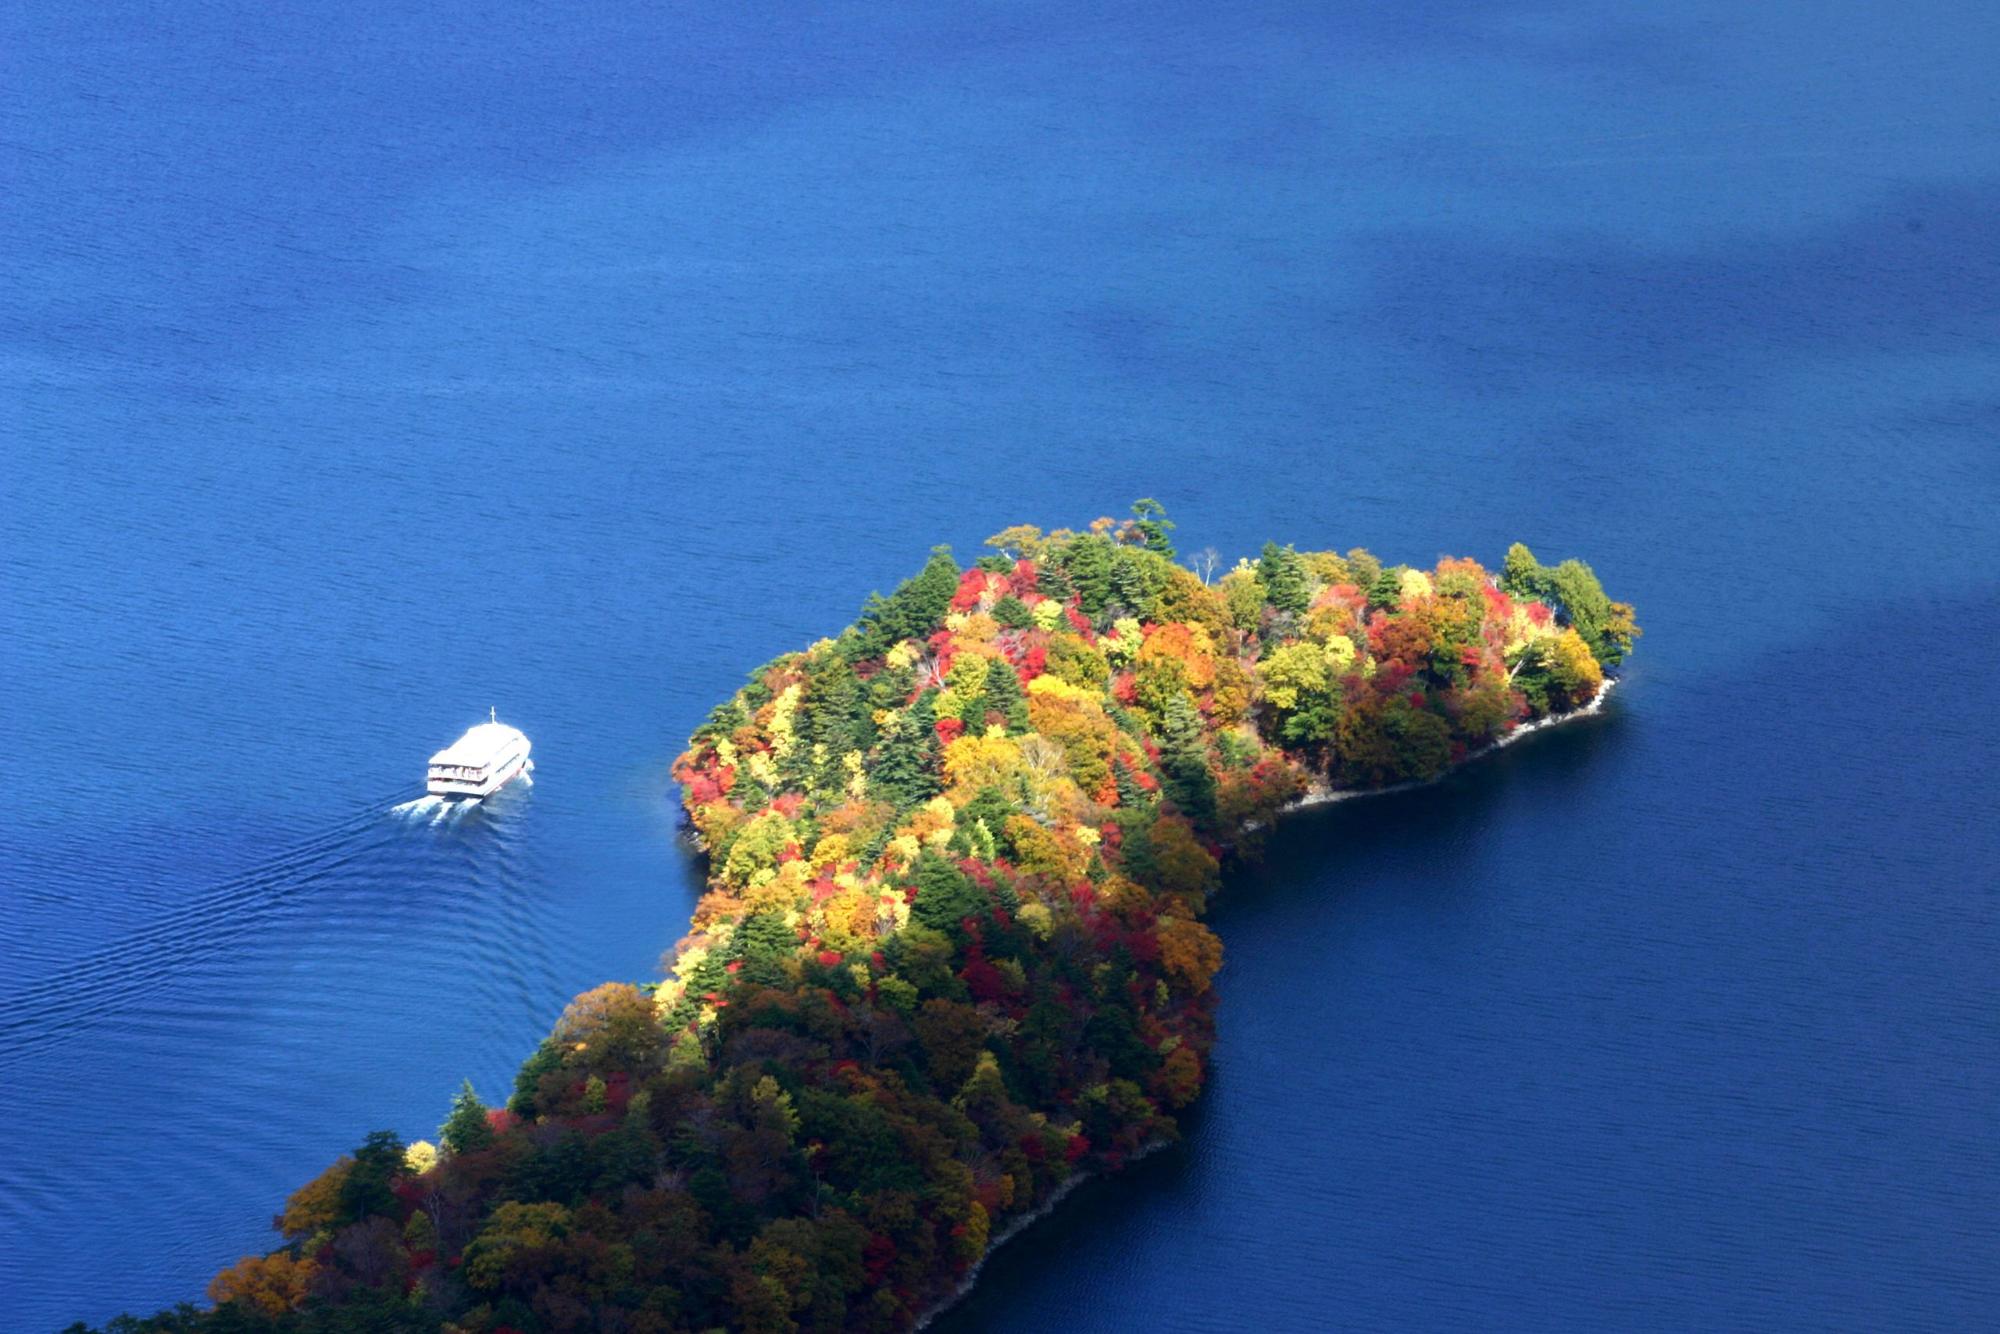 真っ青な海に浮かぶ紅葉で彩られた八丁出島を上空から写した写真